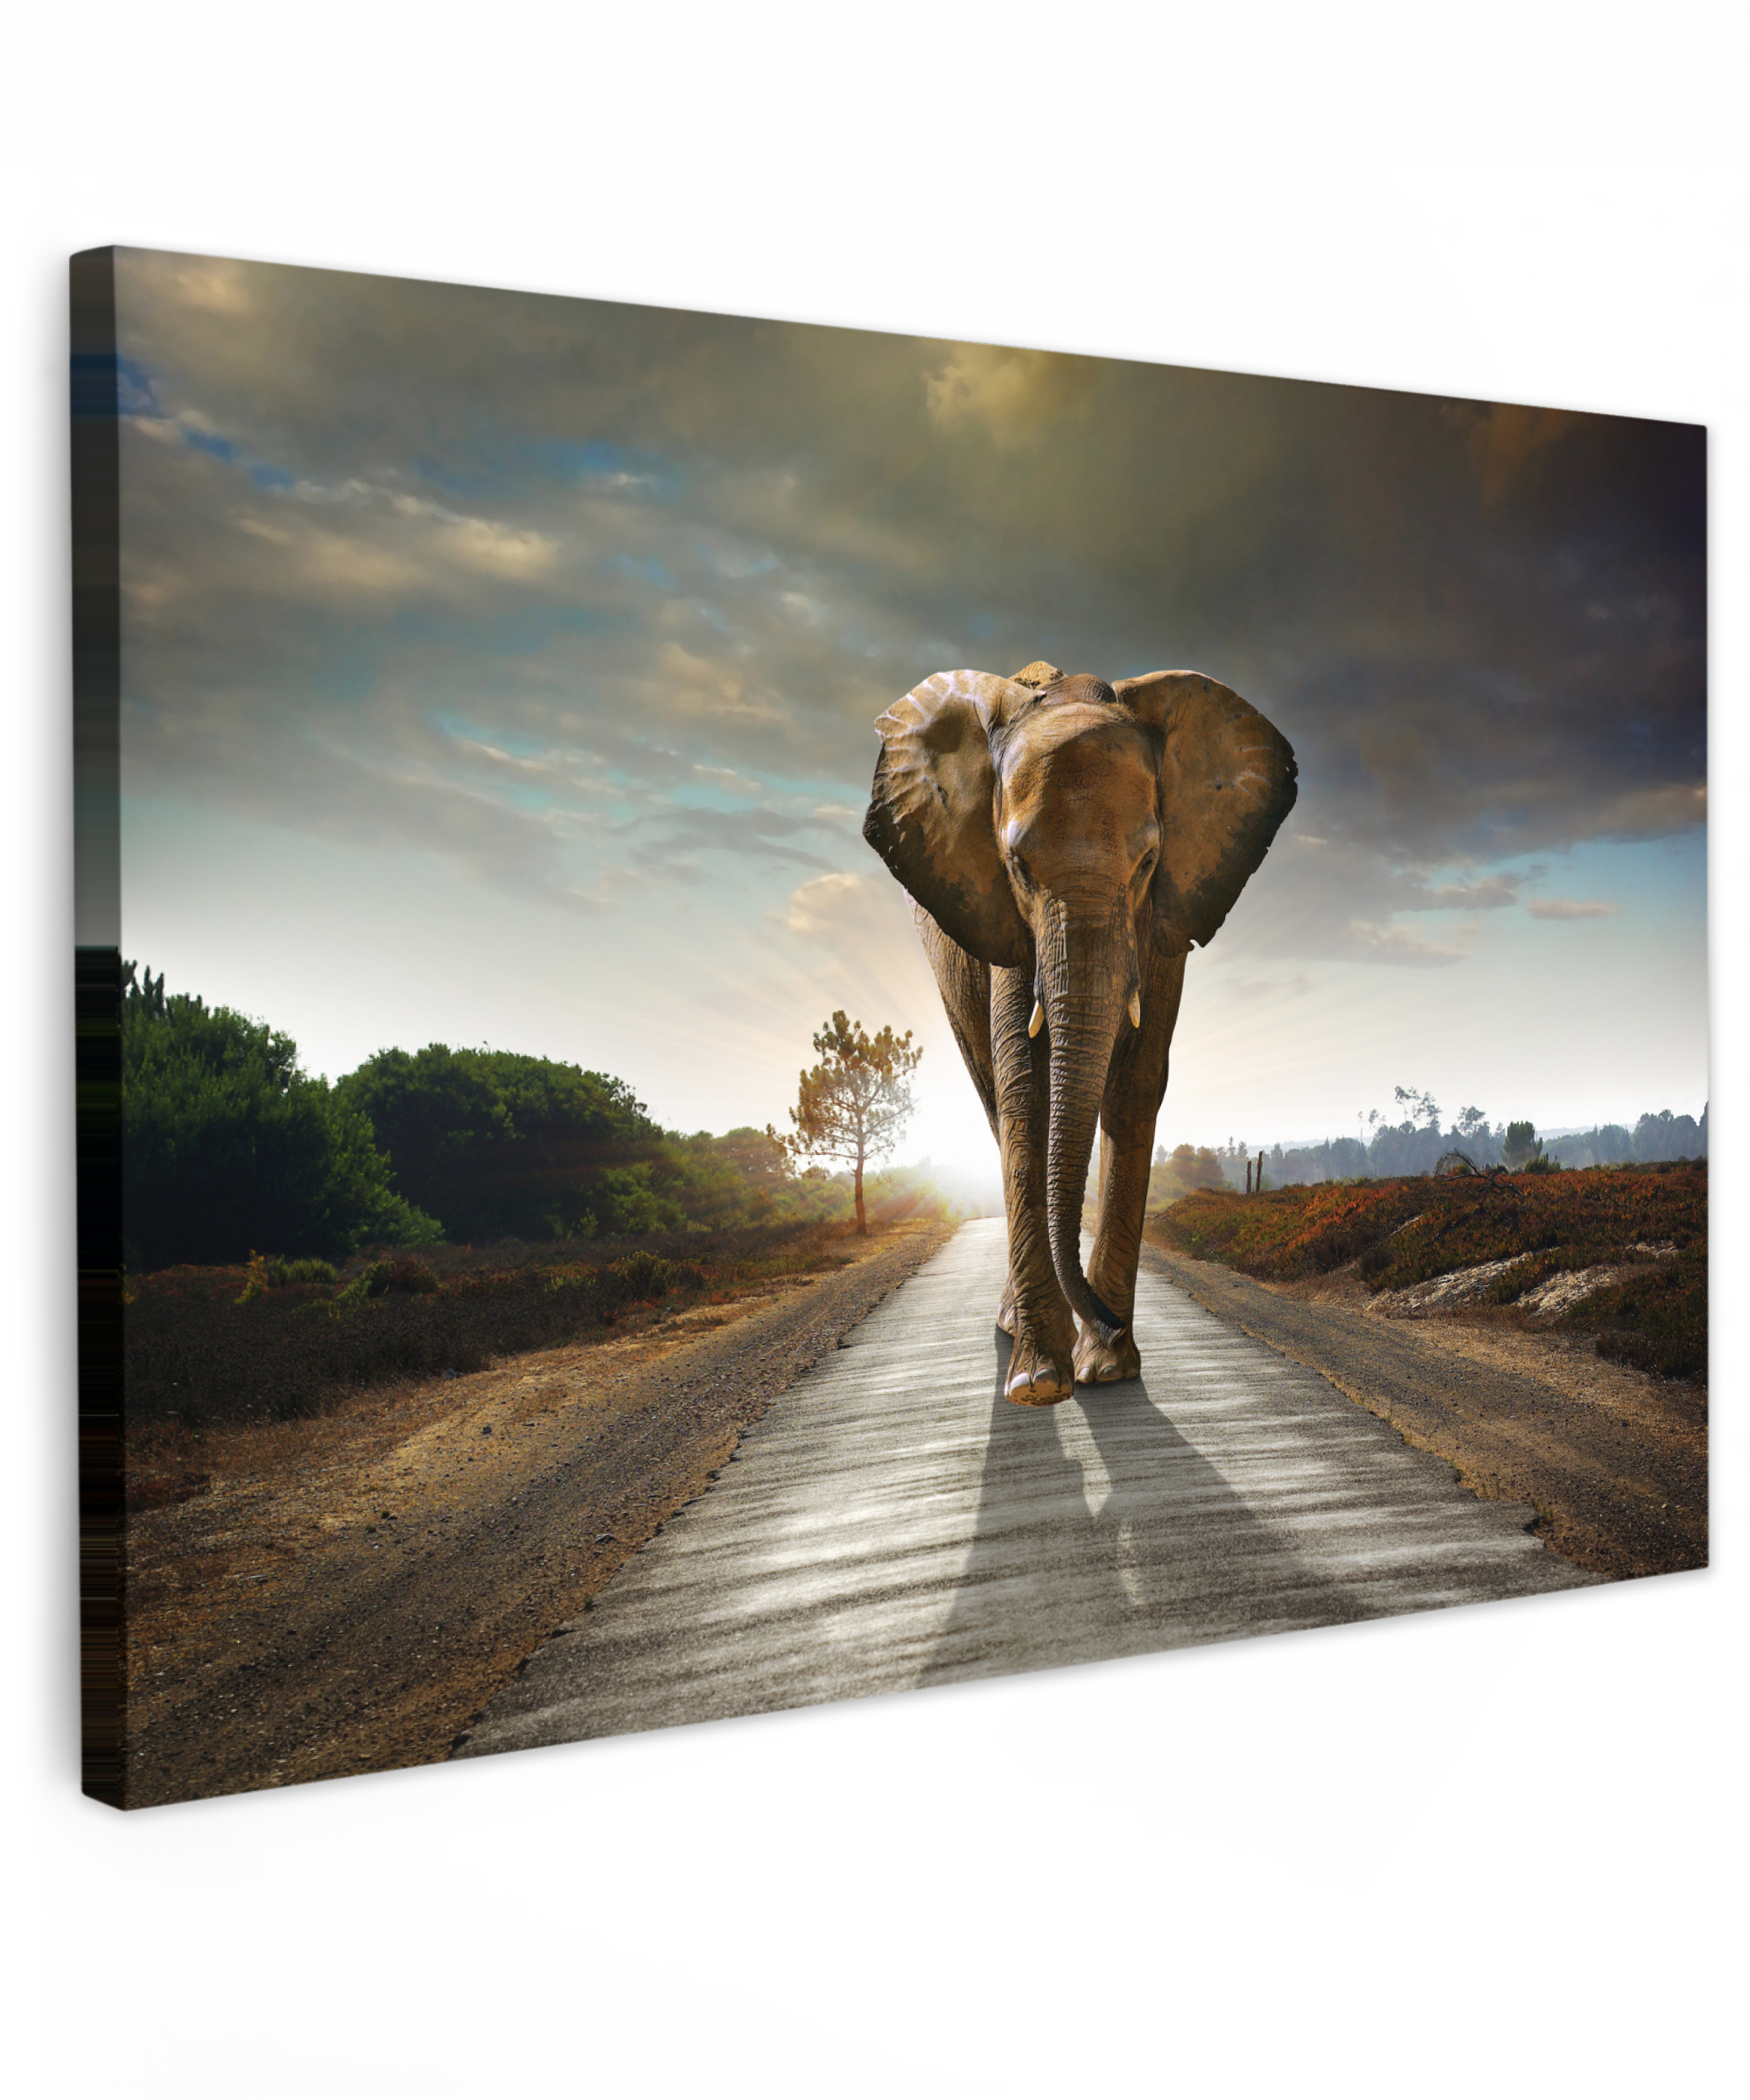 Tableau sur toile - Éléphant - Chemin - Animaux - Coucher de soleil - Paysage